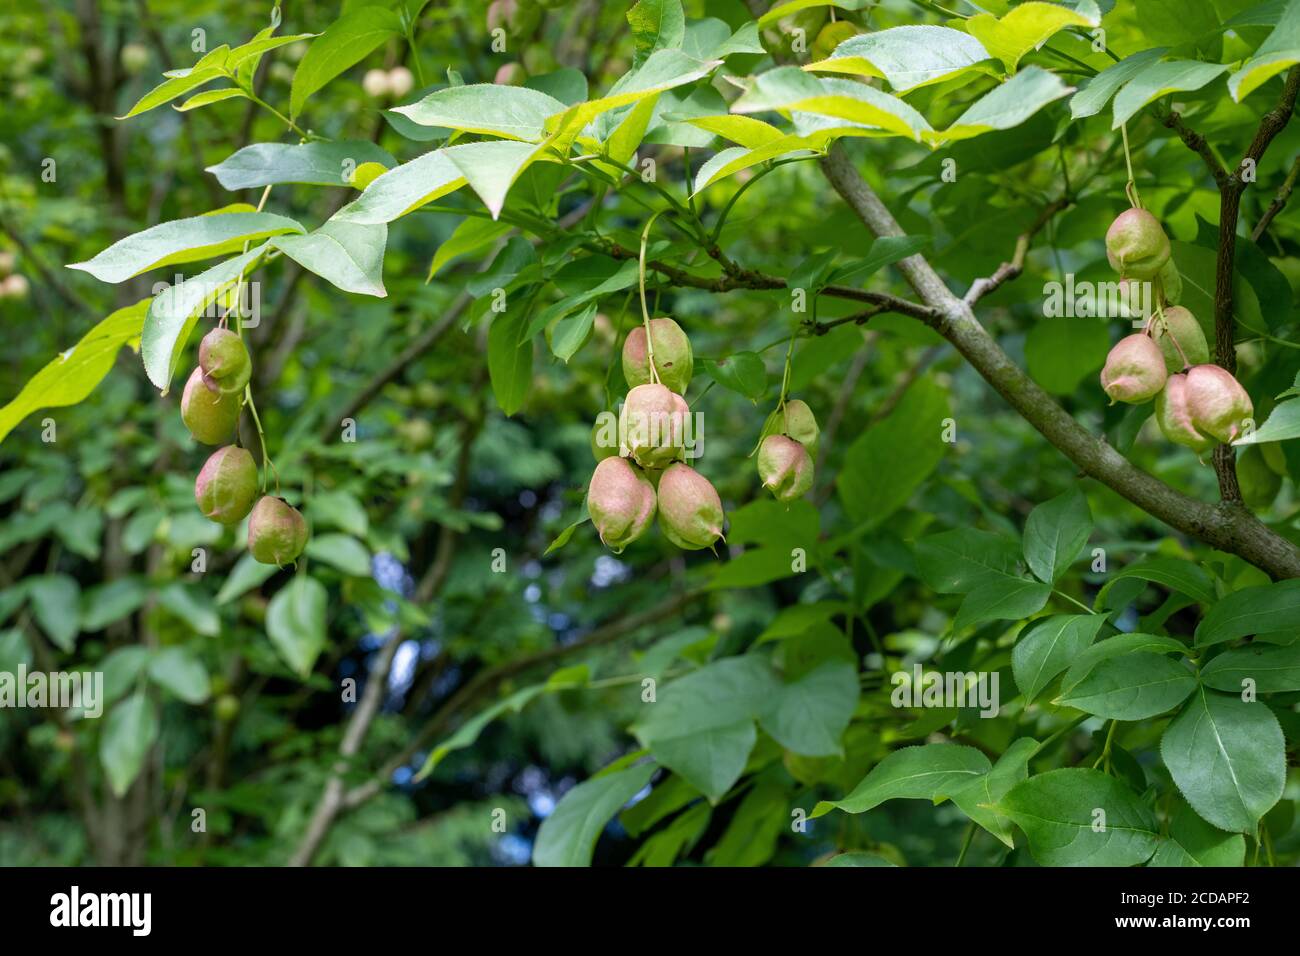 Nahaufnahme von Früchten auf einer Blasenmutter (Staphylea pinnata) Baum Stockfoto